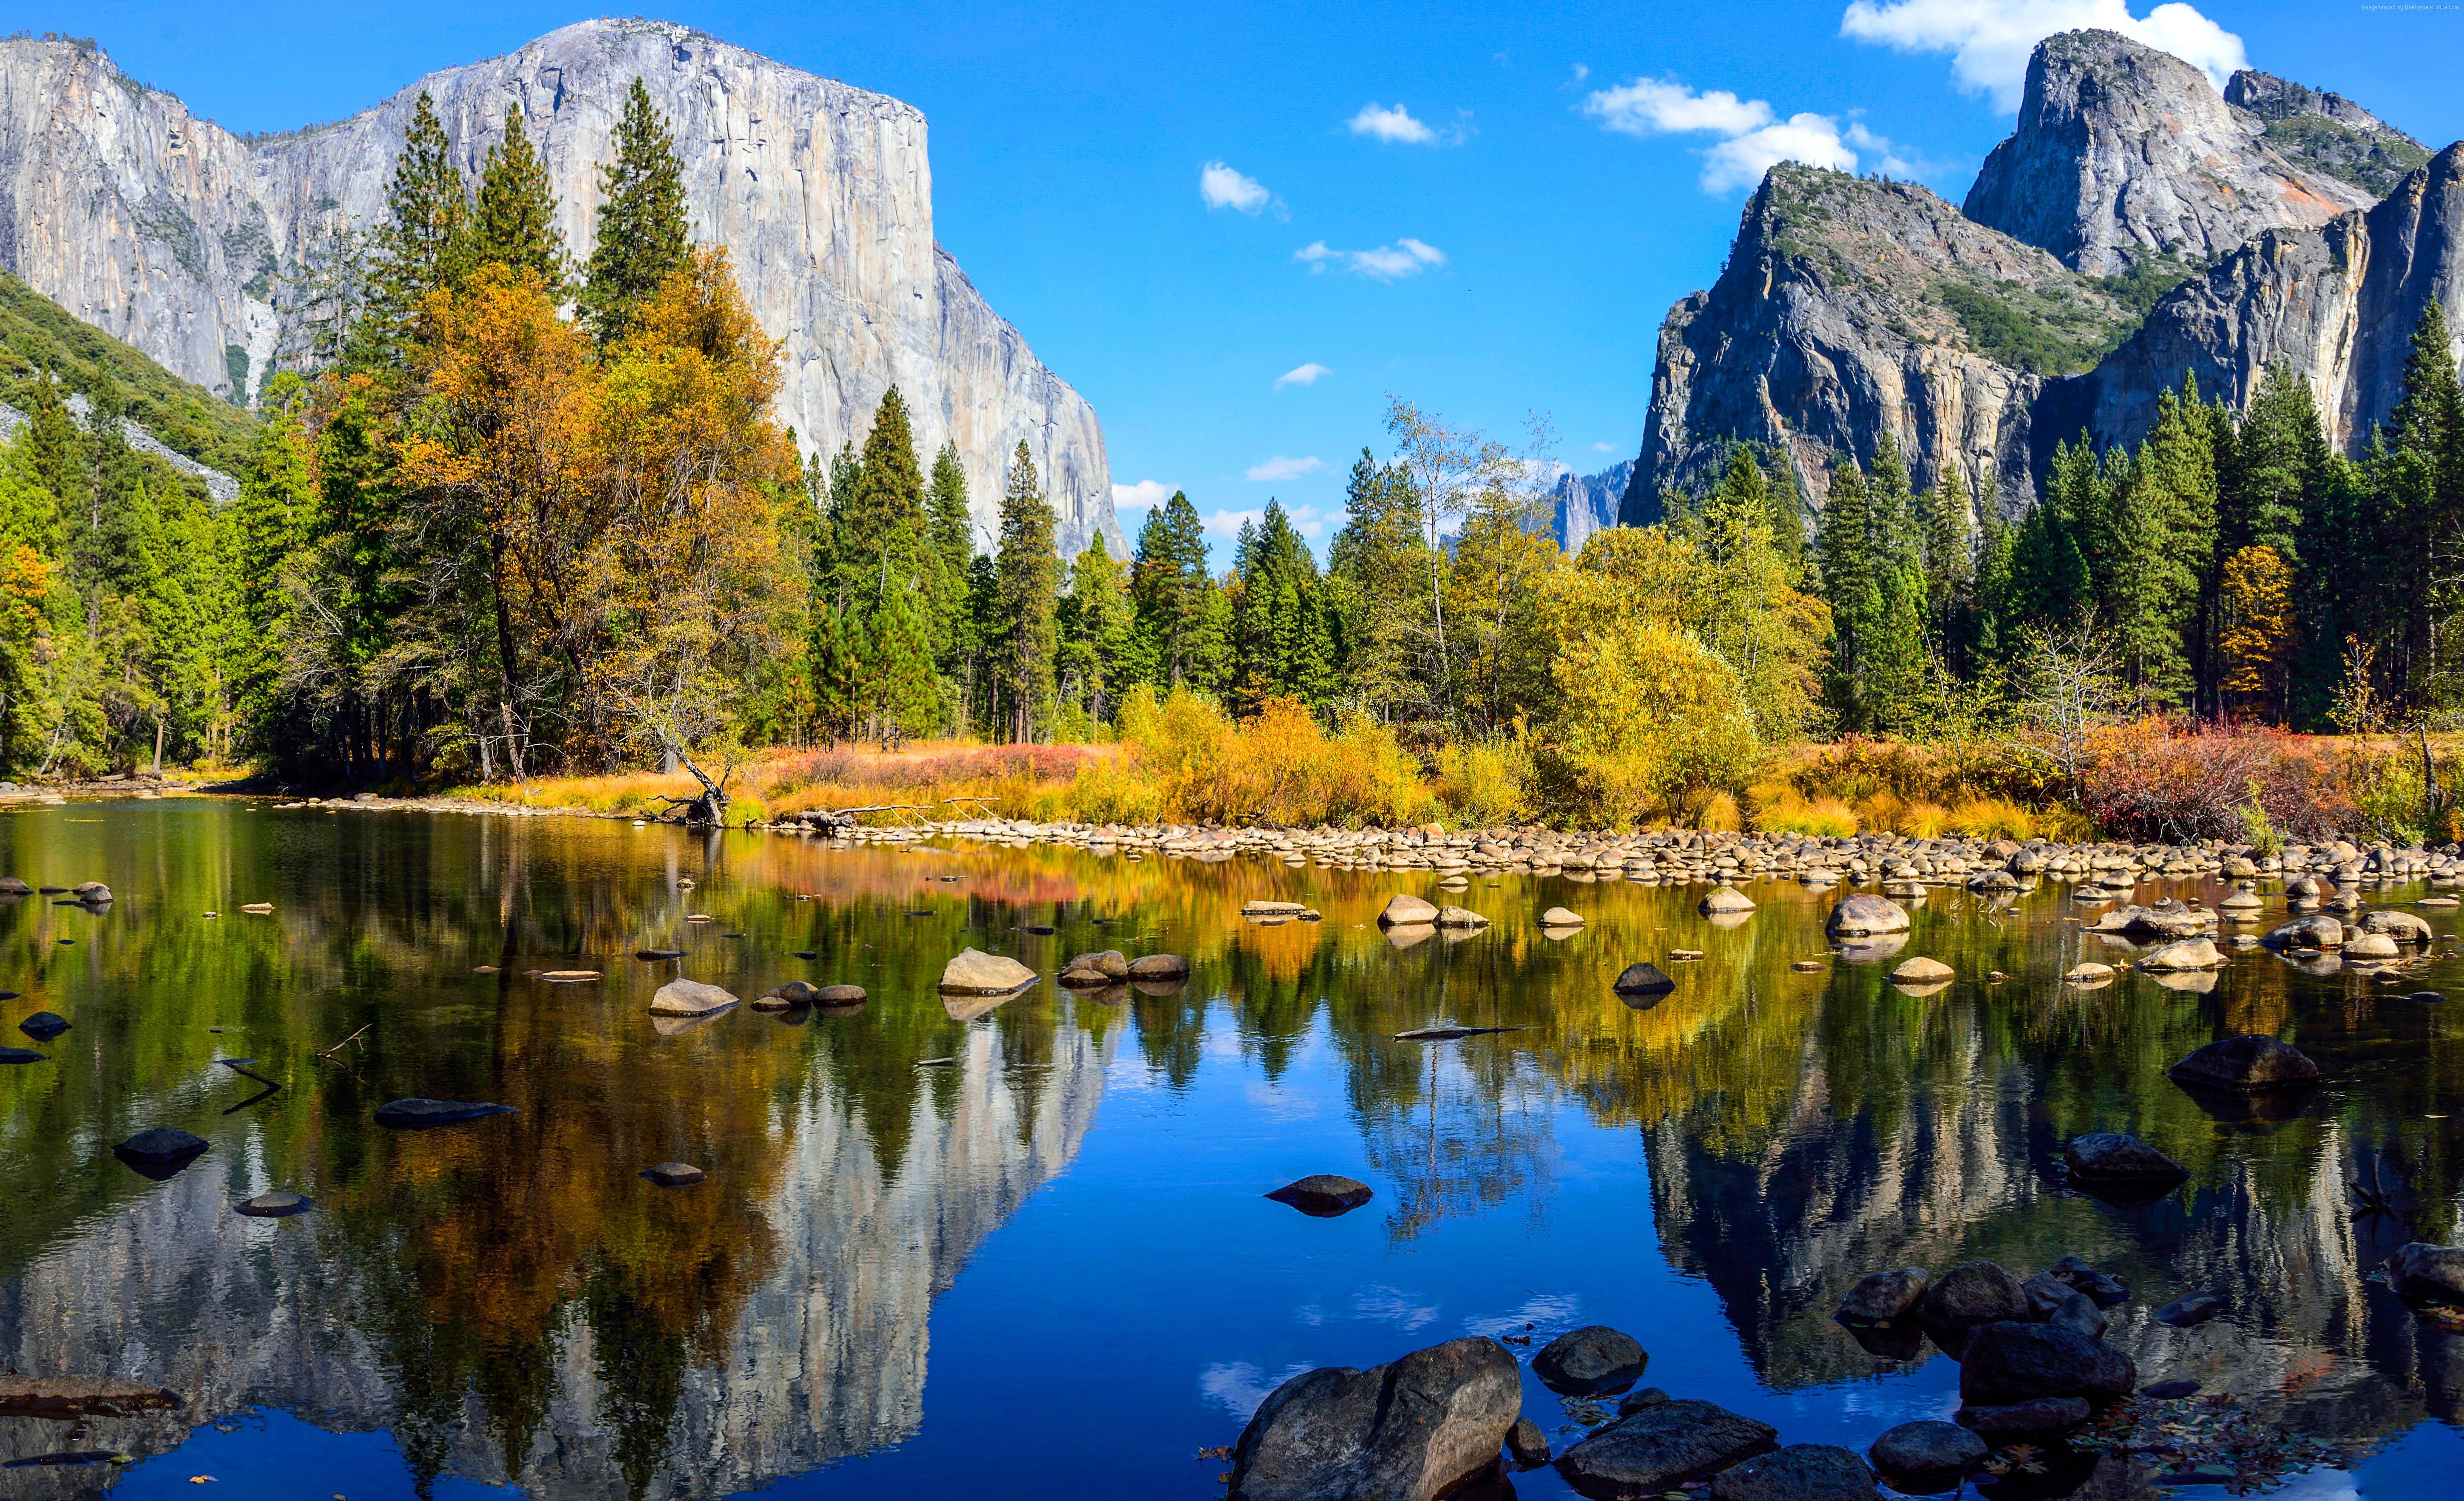 Hãy đến và khám phá bức hình nền Yosemite đẹp tuyệt vời này! Với cảnh quan núi non hùng vĩ và màu sắc phong phú của thiên nhiên, bạn sẽ không thể rời mắt khỏi nó. Hãy để tinh thần của bạn được thư giãn và ấm áp bằng cách trang trí màn hình máy tính của bạn với hình nền đầy mơ ước này.